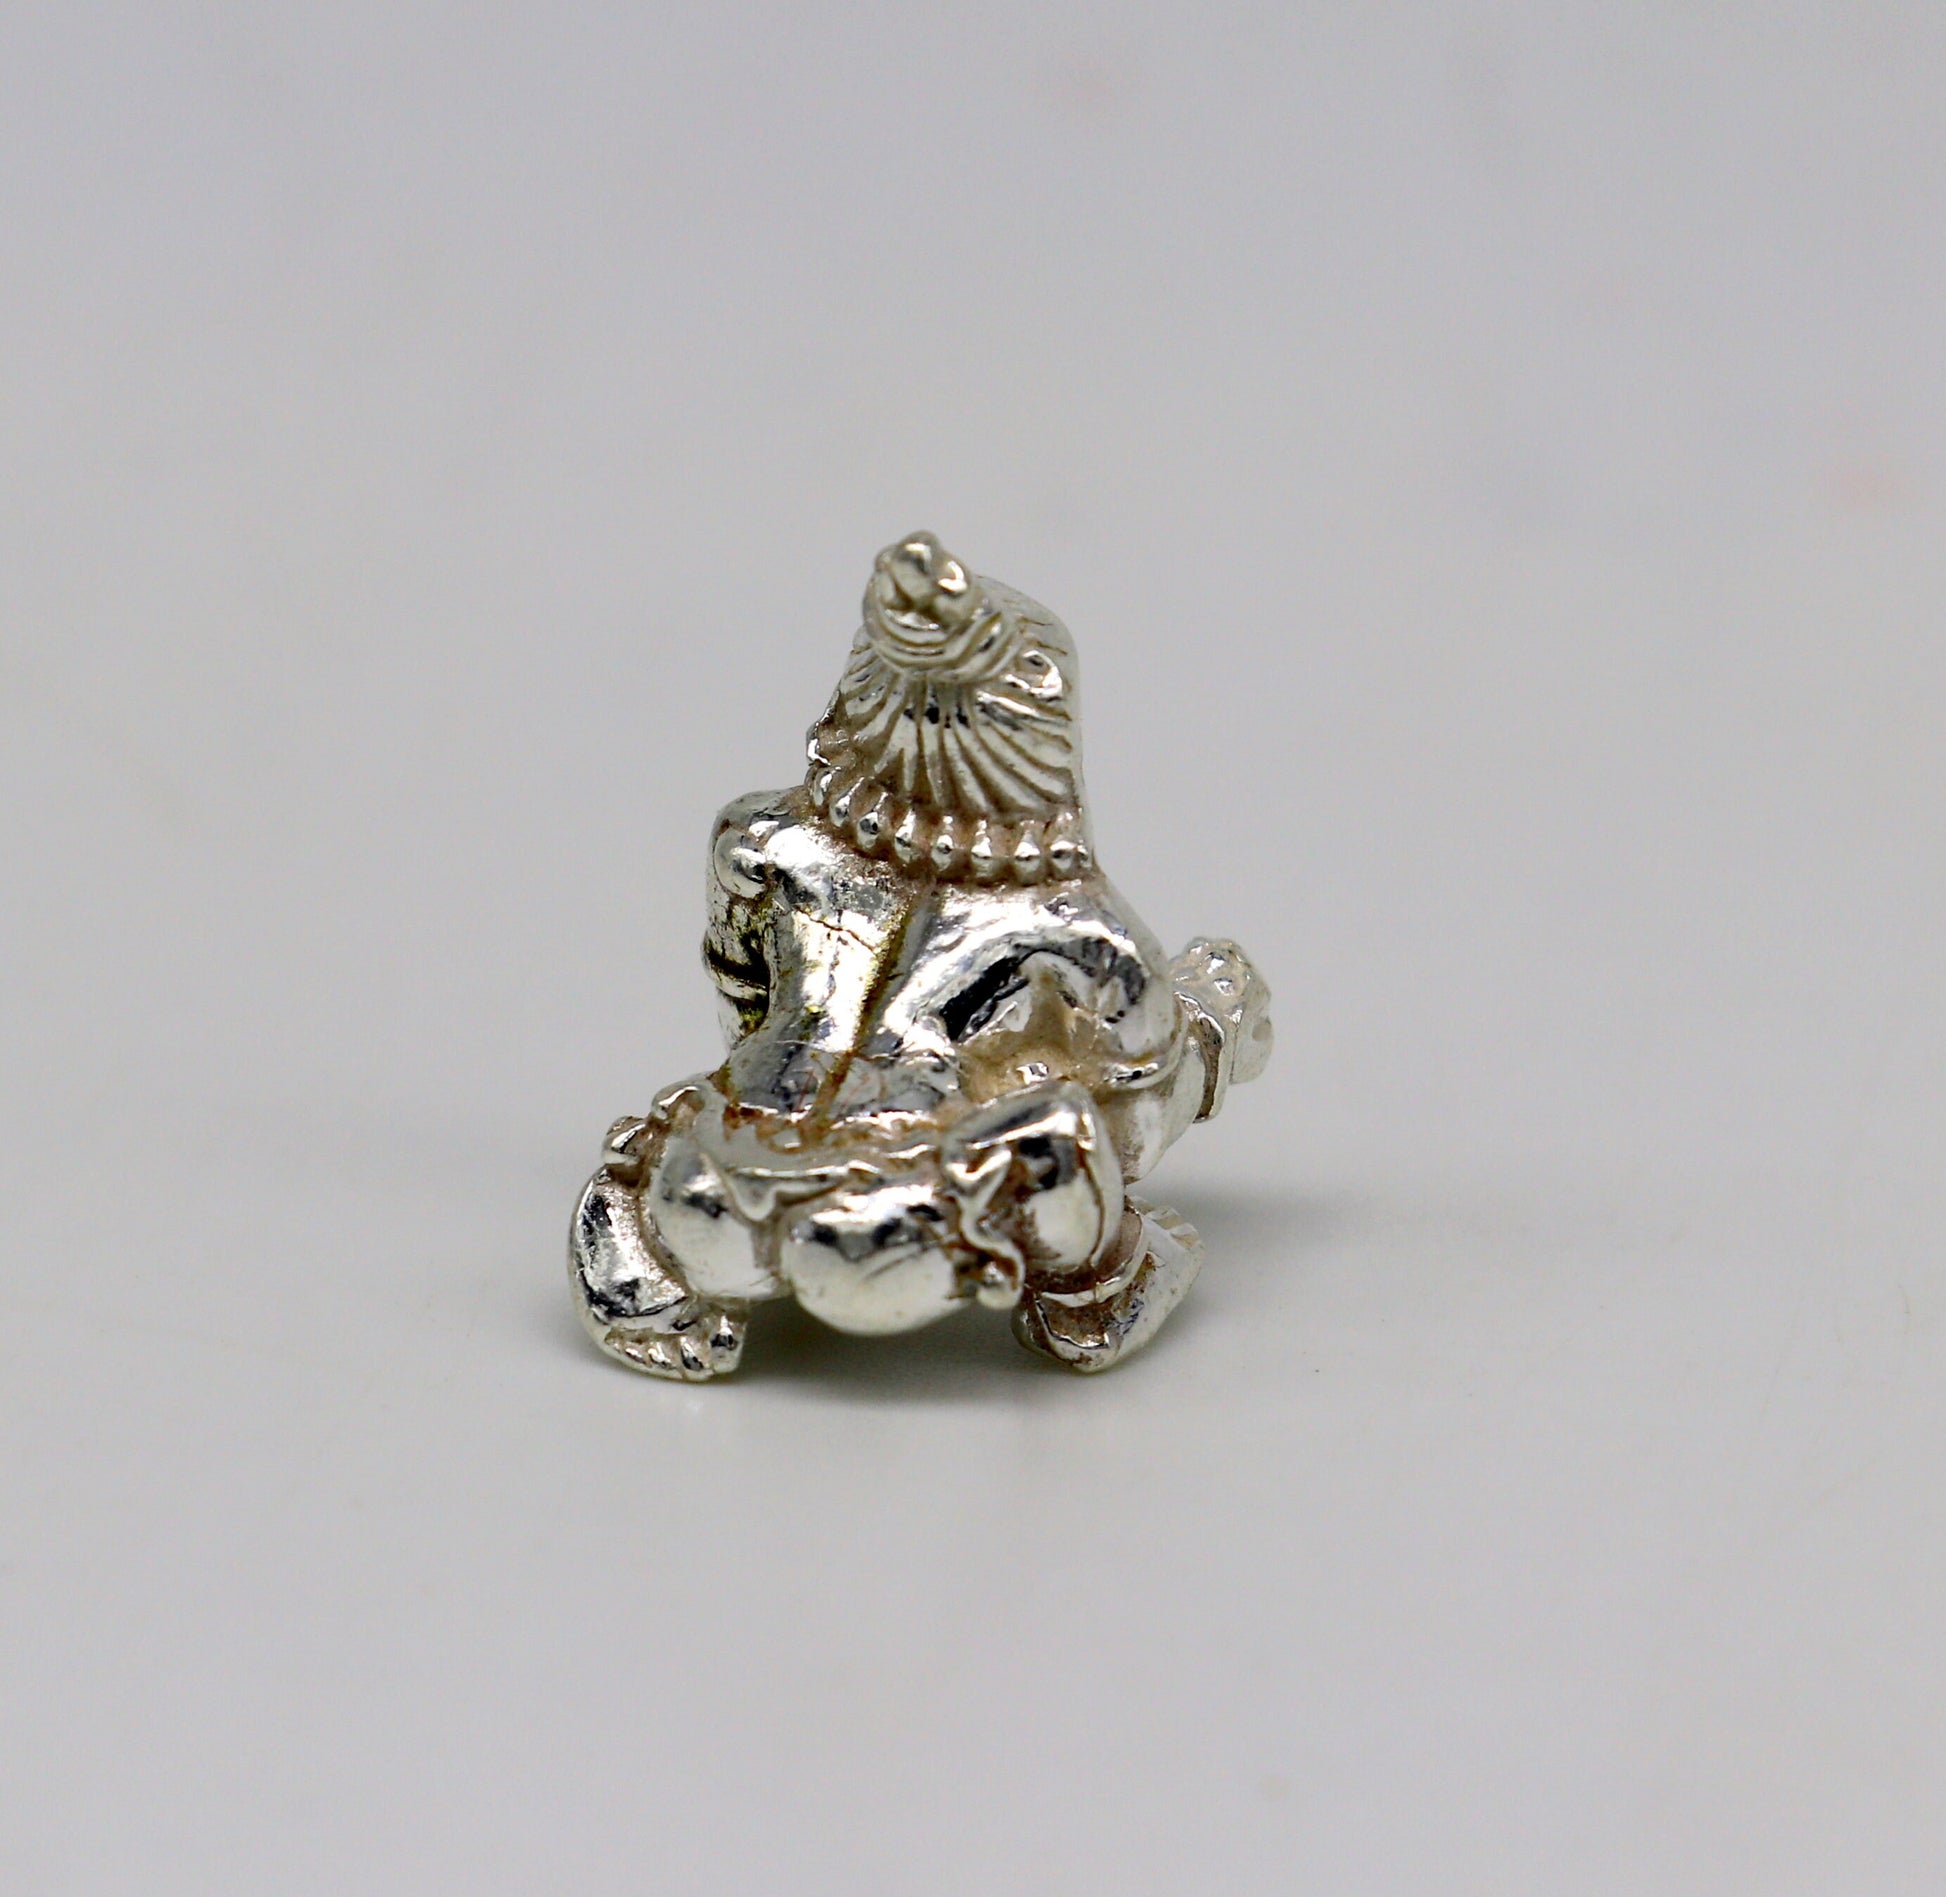 Solid silver handmade Hindu idol little Krishna, Ladu Gopal, small statue sculpture home temple Balgopal puja art, crawling krishna su198 - TRIBAL ORNAMENTS